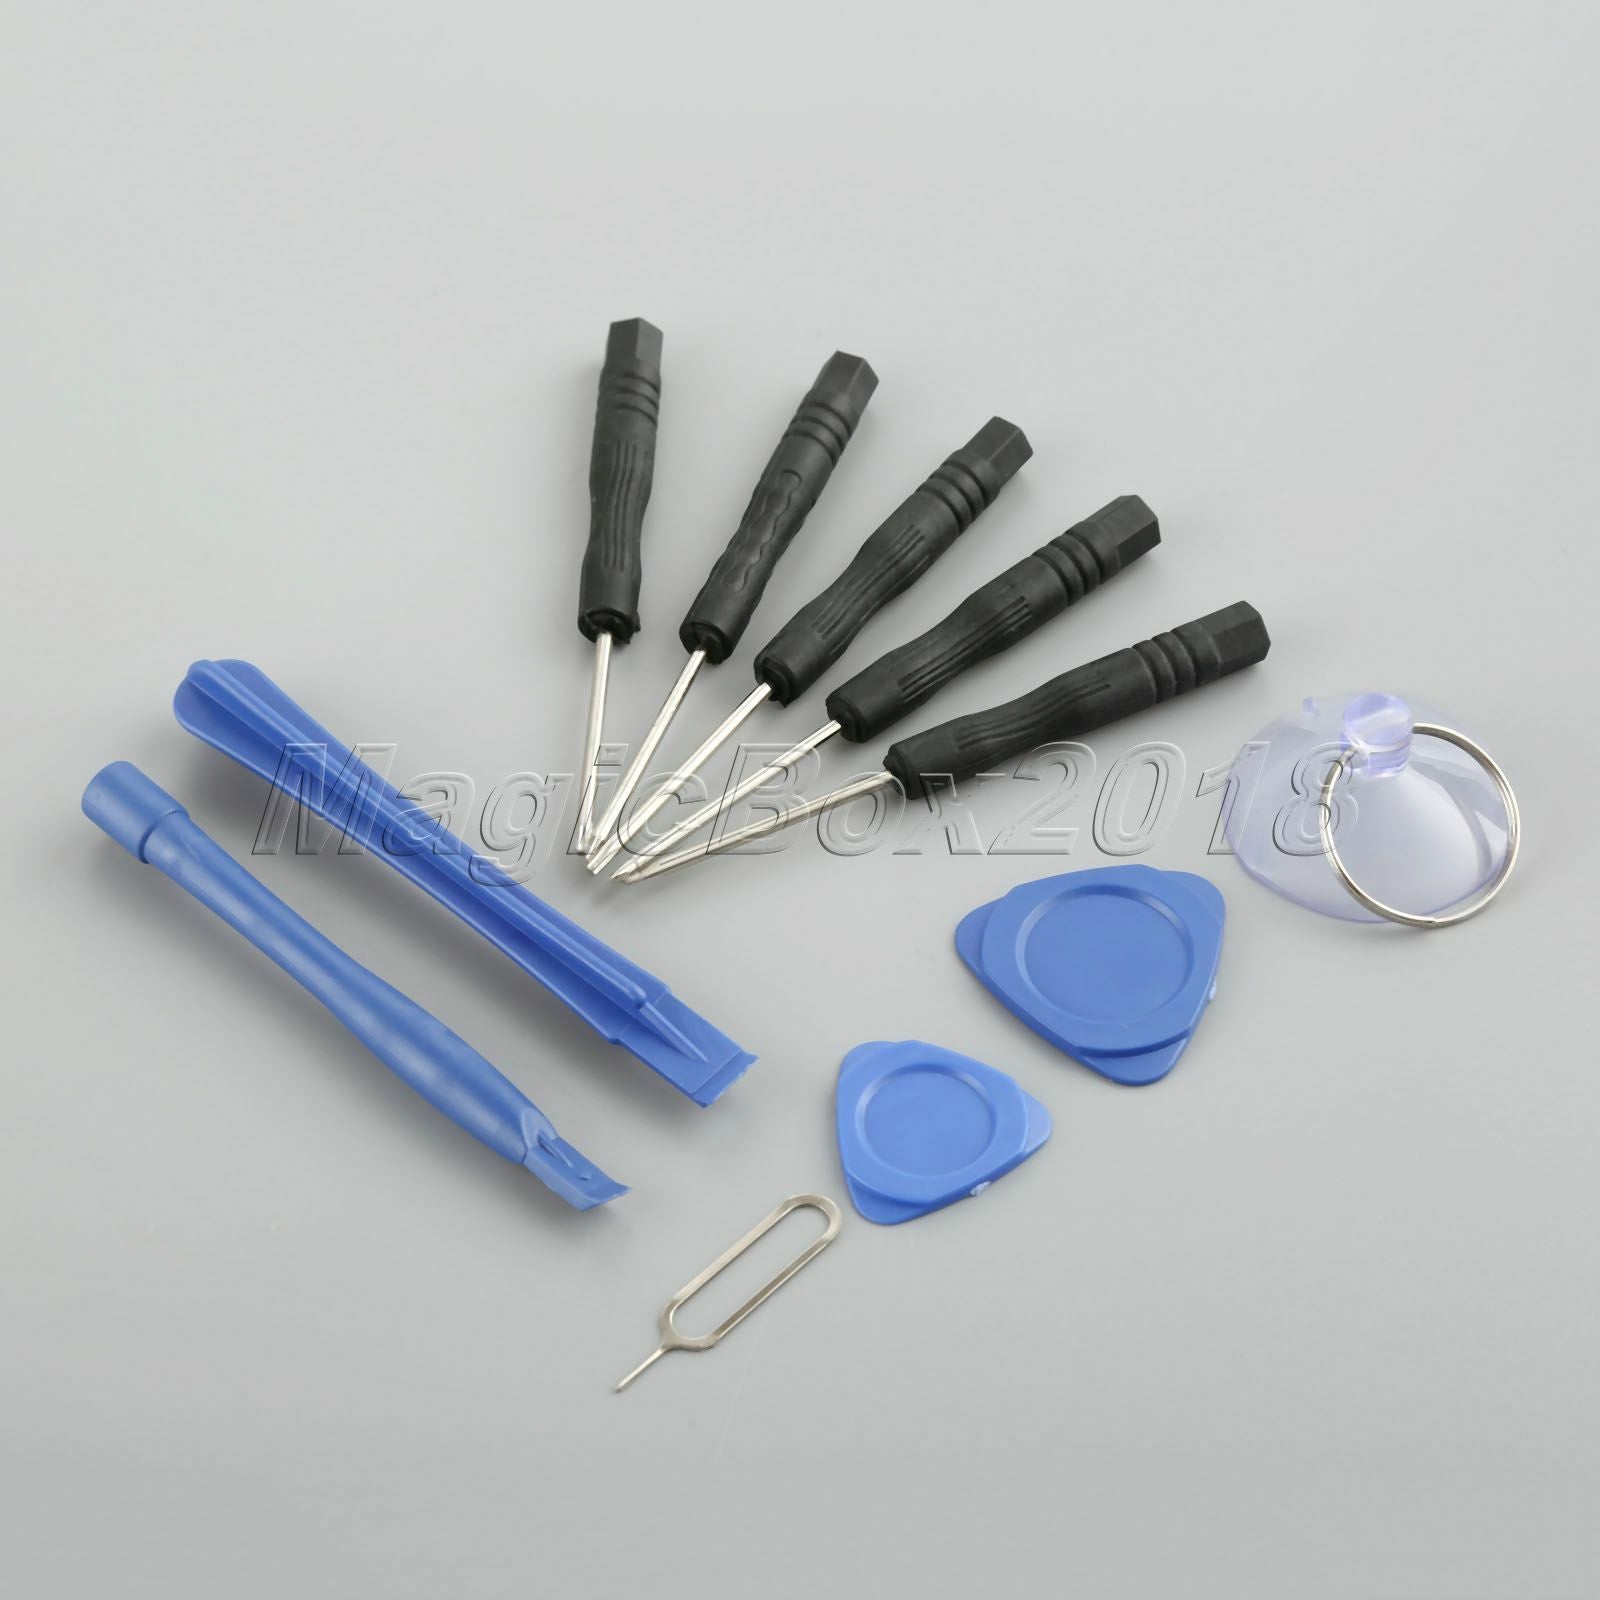 11 in 1 Repair Opening Tools Screwdriver Kit Set